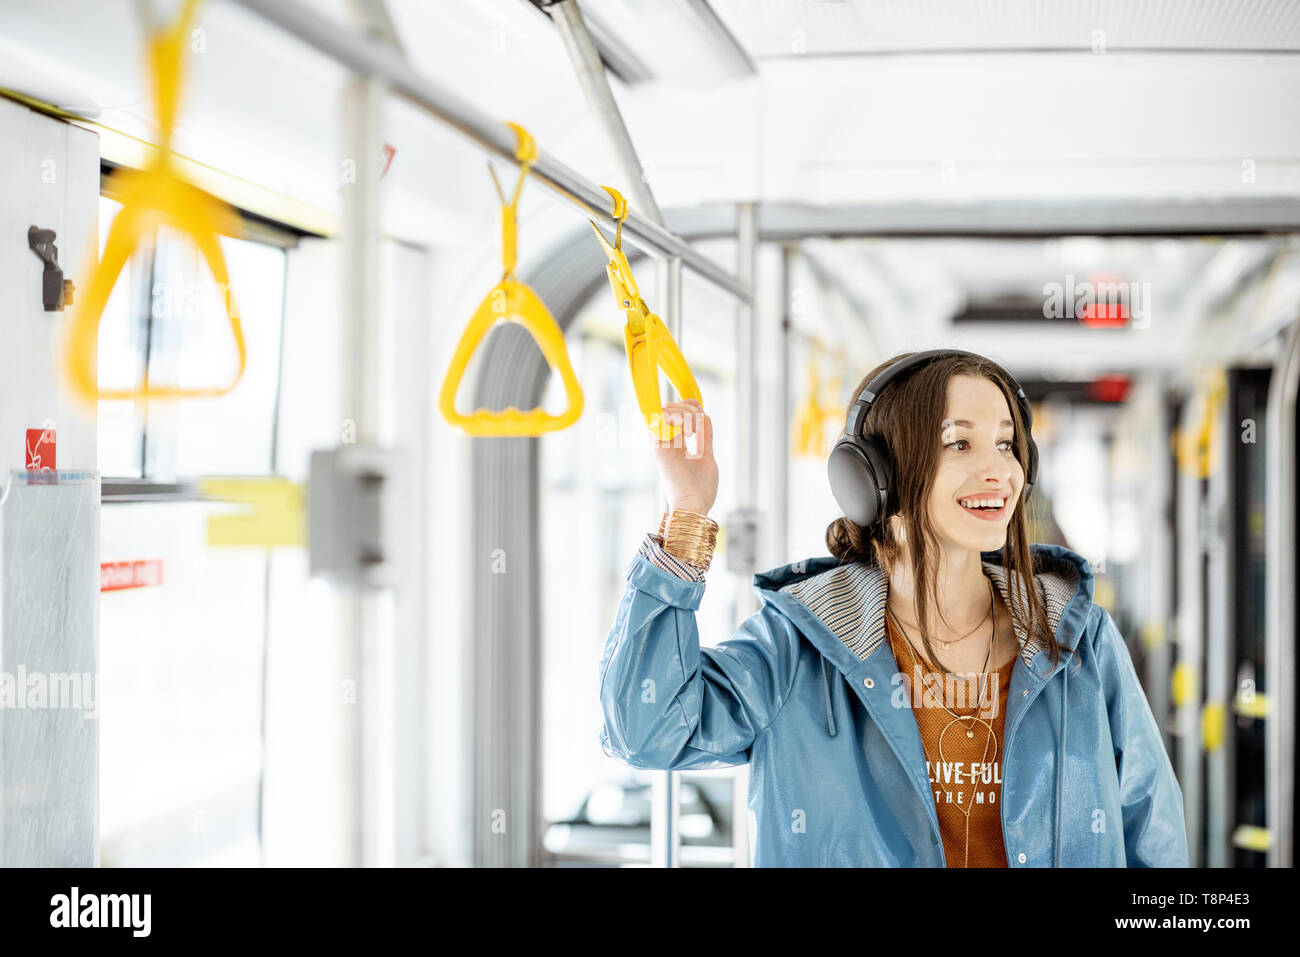 Junge Frau mit Griff während der Fahrt in modernen Straßenbahn. Glückliche Passagiere genießen Urlaub im öffentlichen Verkehr Stockfoto